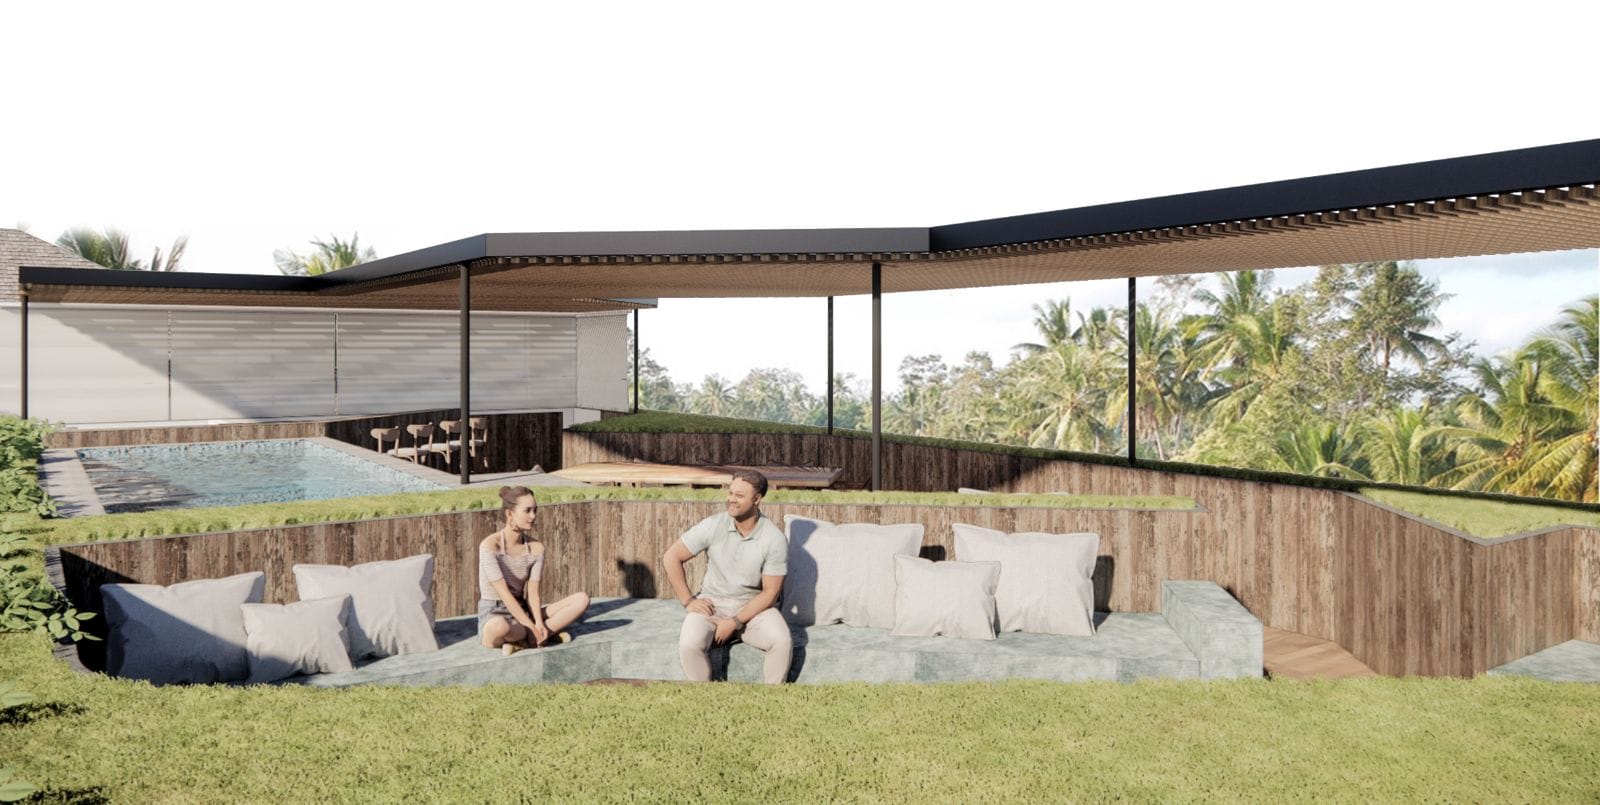 NEW LUXE RAINY - Bali Architecture Design